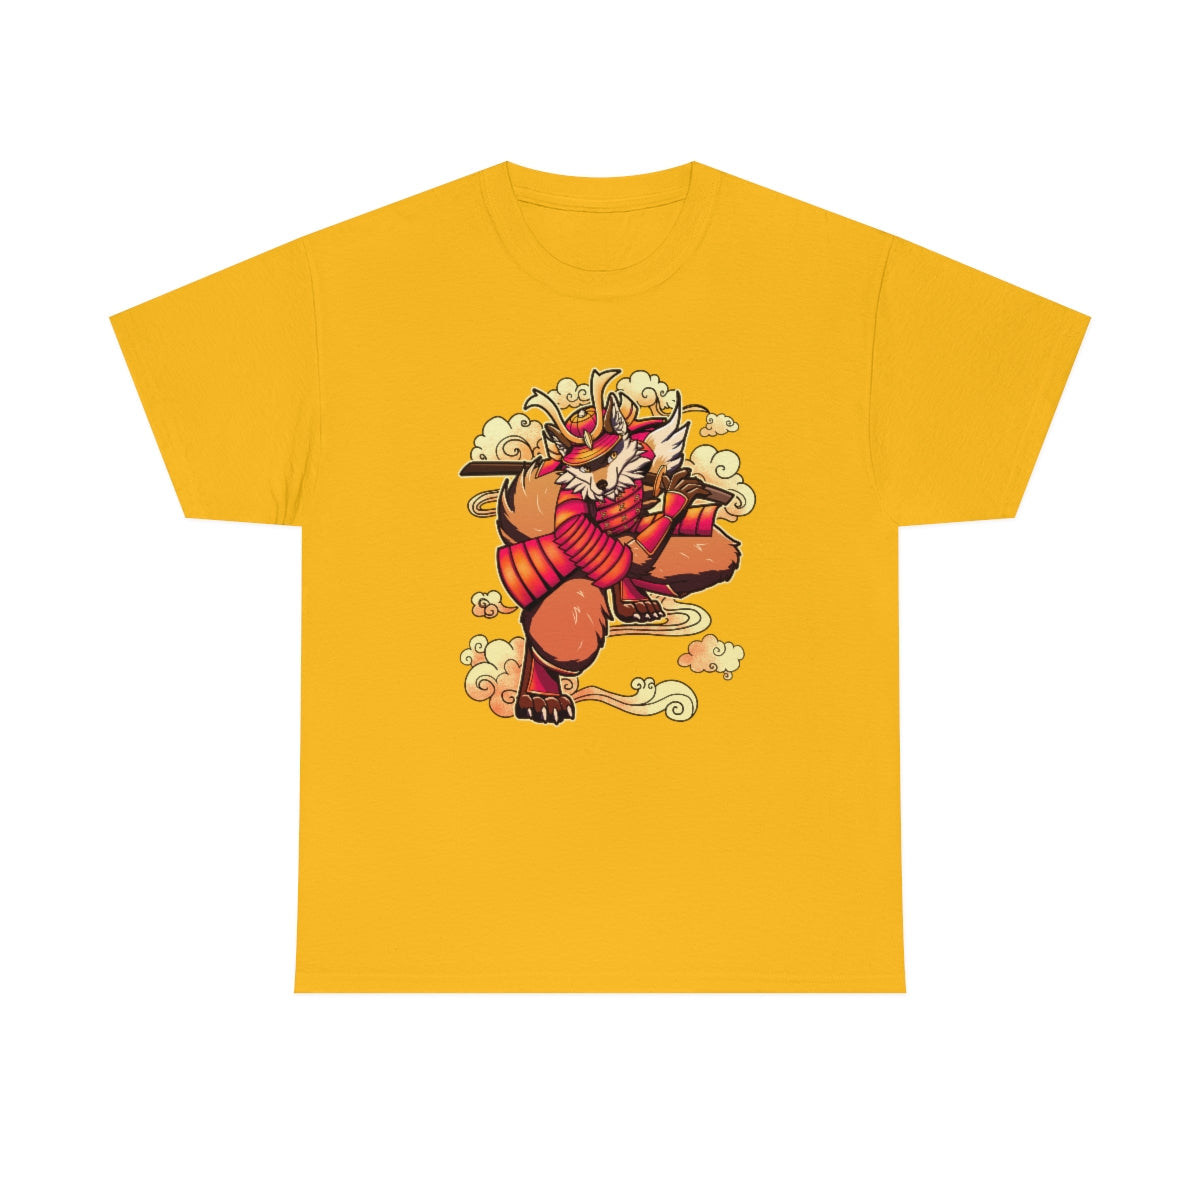 Samurai - T-Shirt T-Shirt Artworktee Gold S 